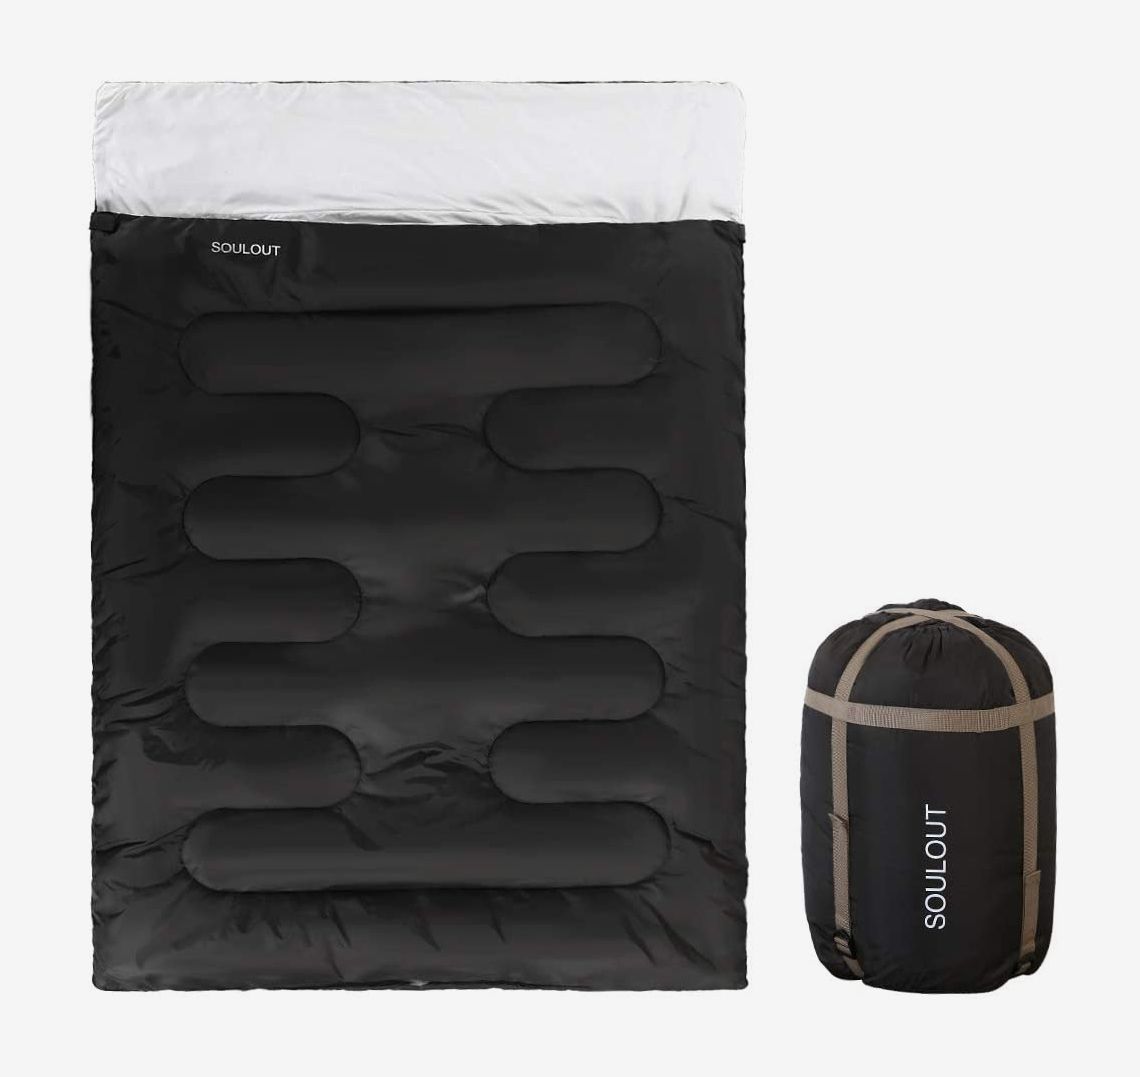 4 Season Sleeping Bag Camping Hiking Outdoor Envelope Zip Up Single Suit Case UK 